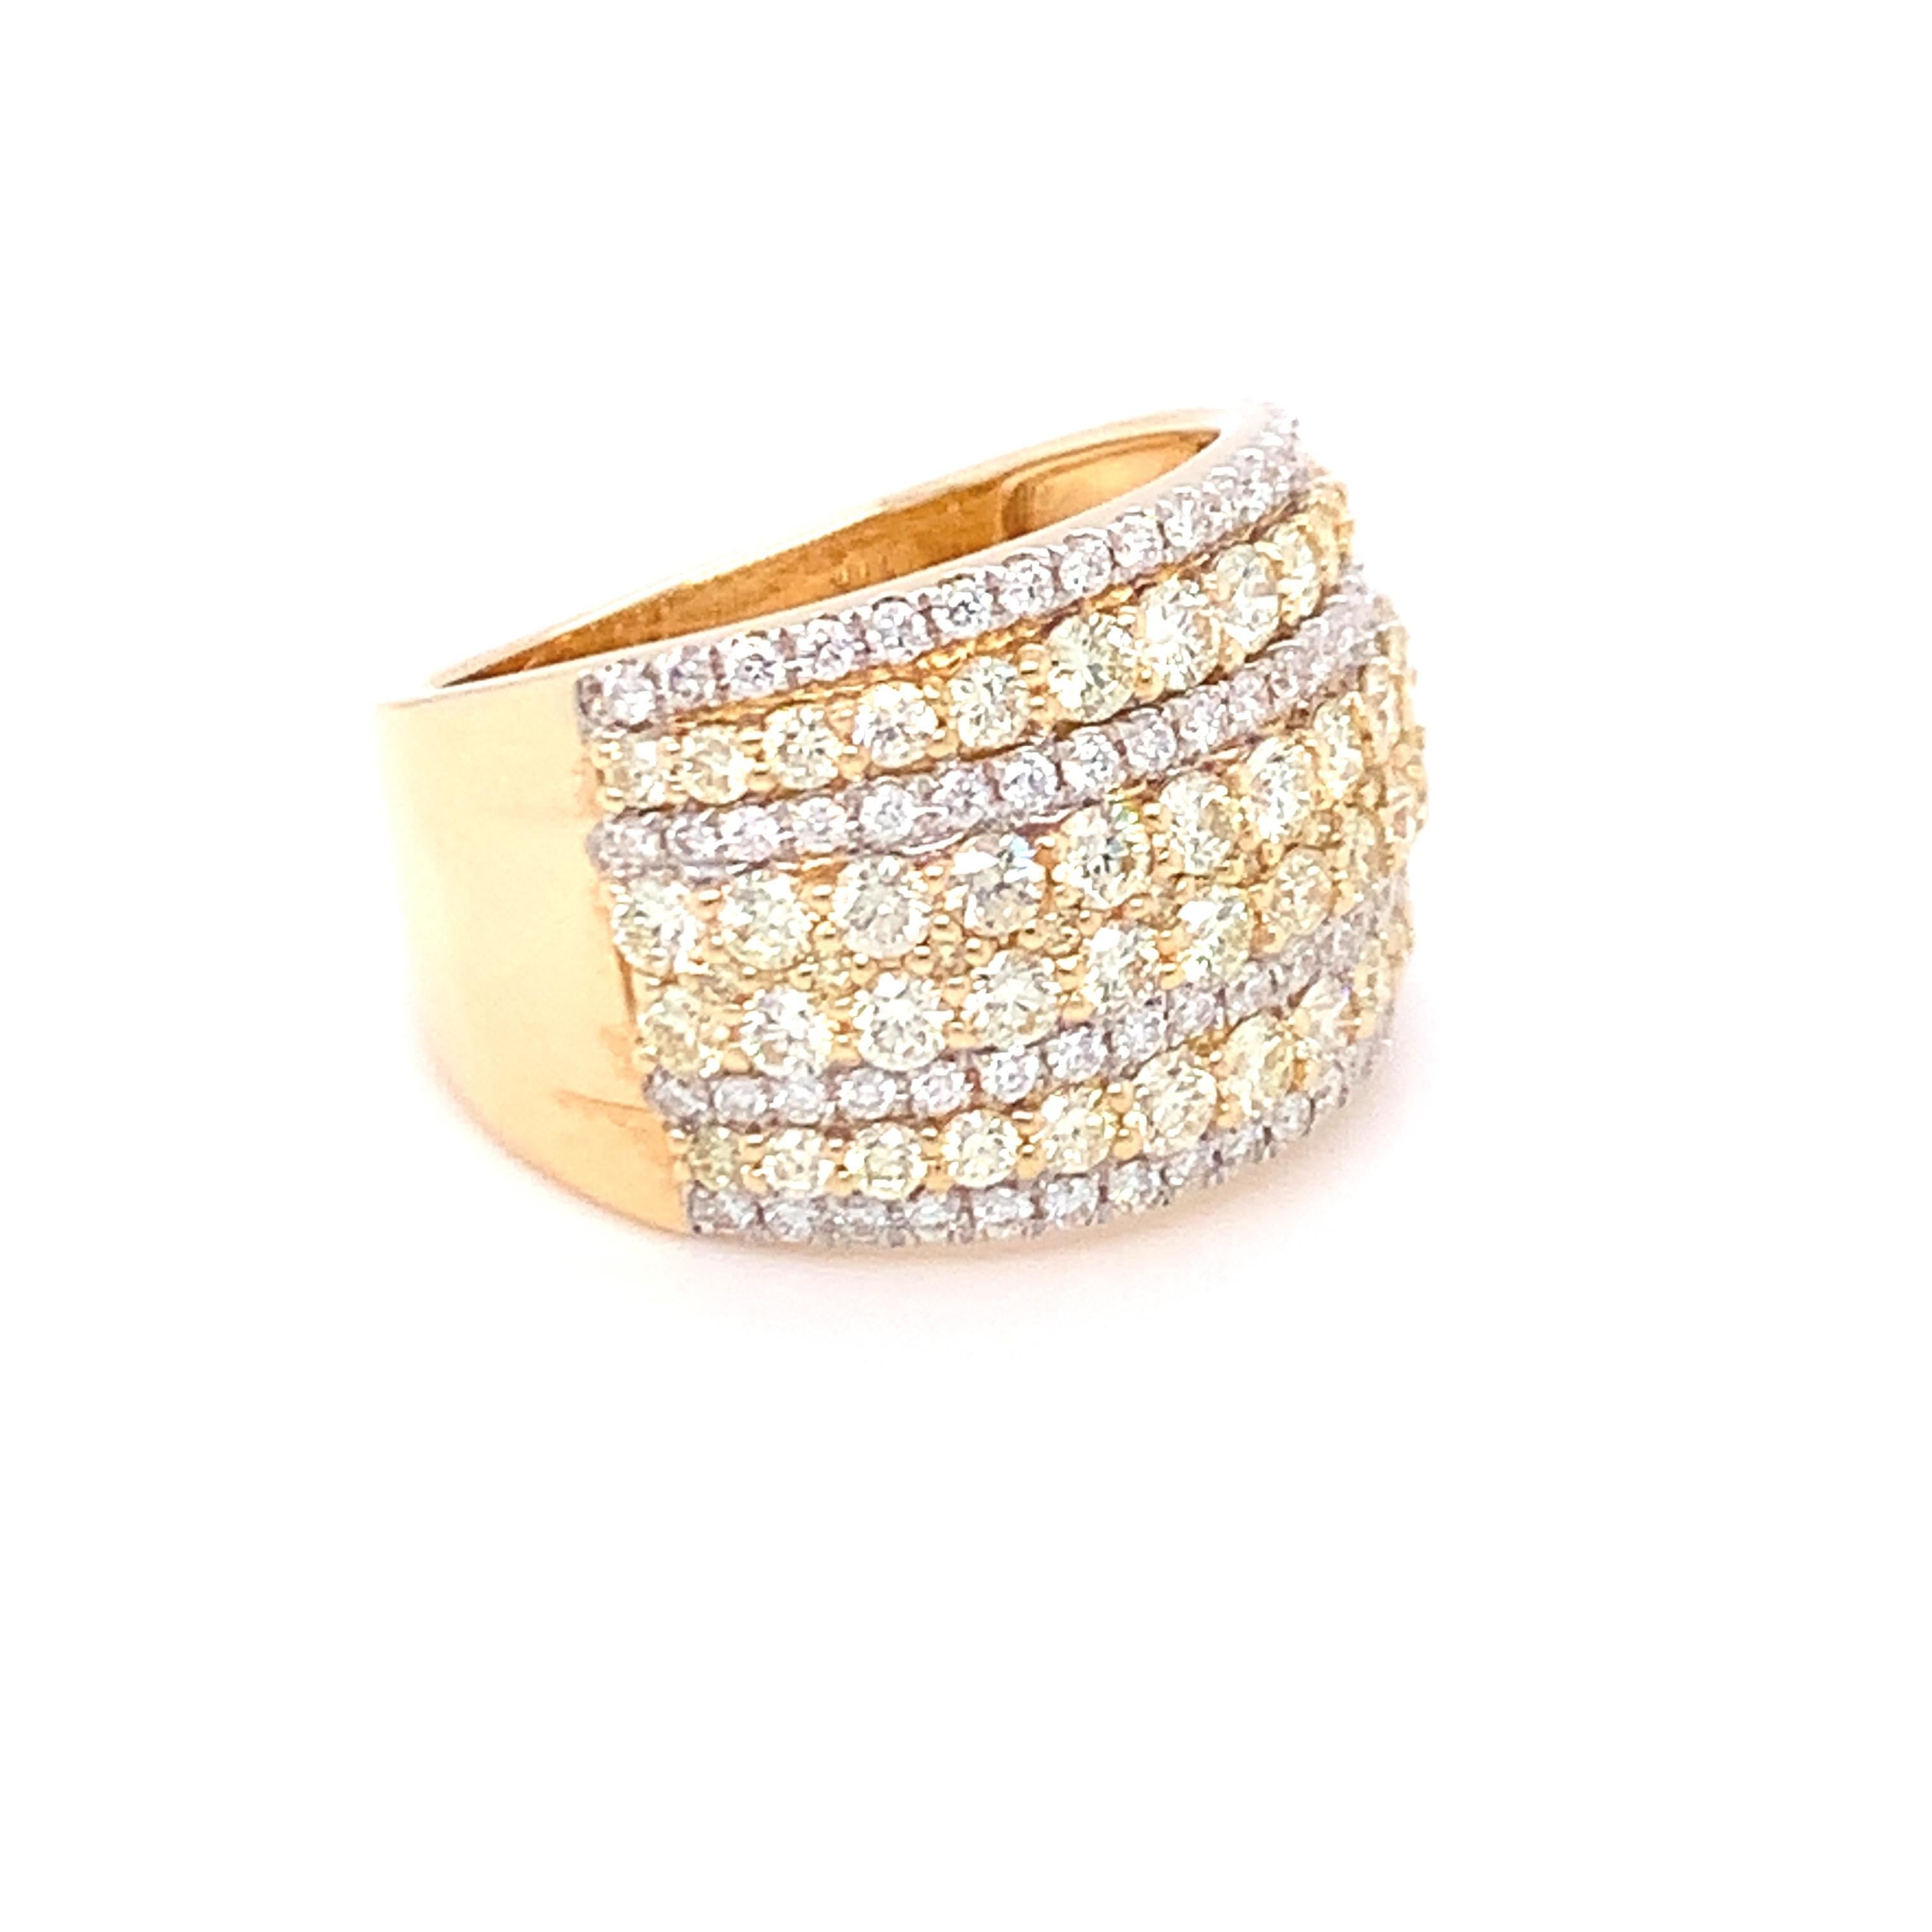 Eine Kombination aus gelben und weißen Diamanten in acht Reihen macht dieses Band zu einem atemberaubenden Schmuckstück. In Gelbgold gefasst und von geschickten Händen gefertigt.
Gelber Diamant: 1,65ct
Weißer Diamant: 0,43ct
Gold: 14K